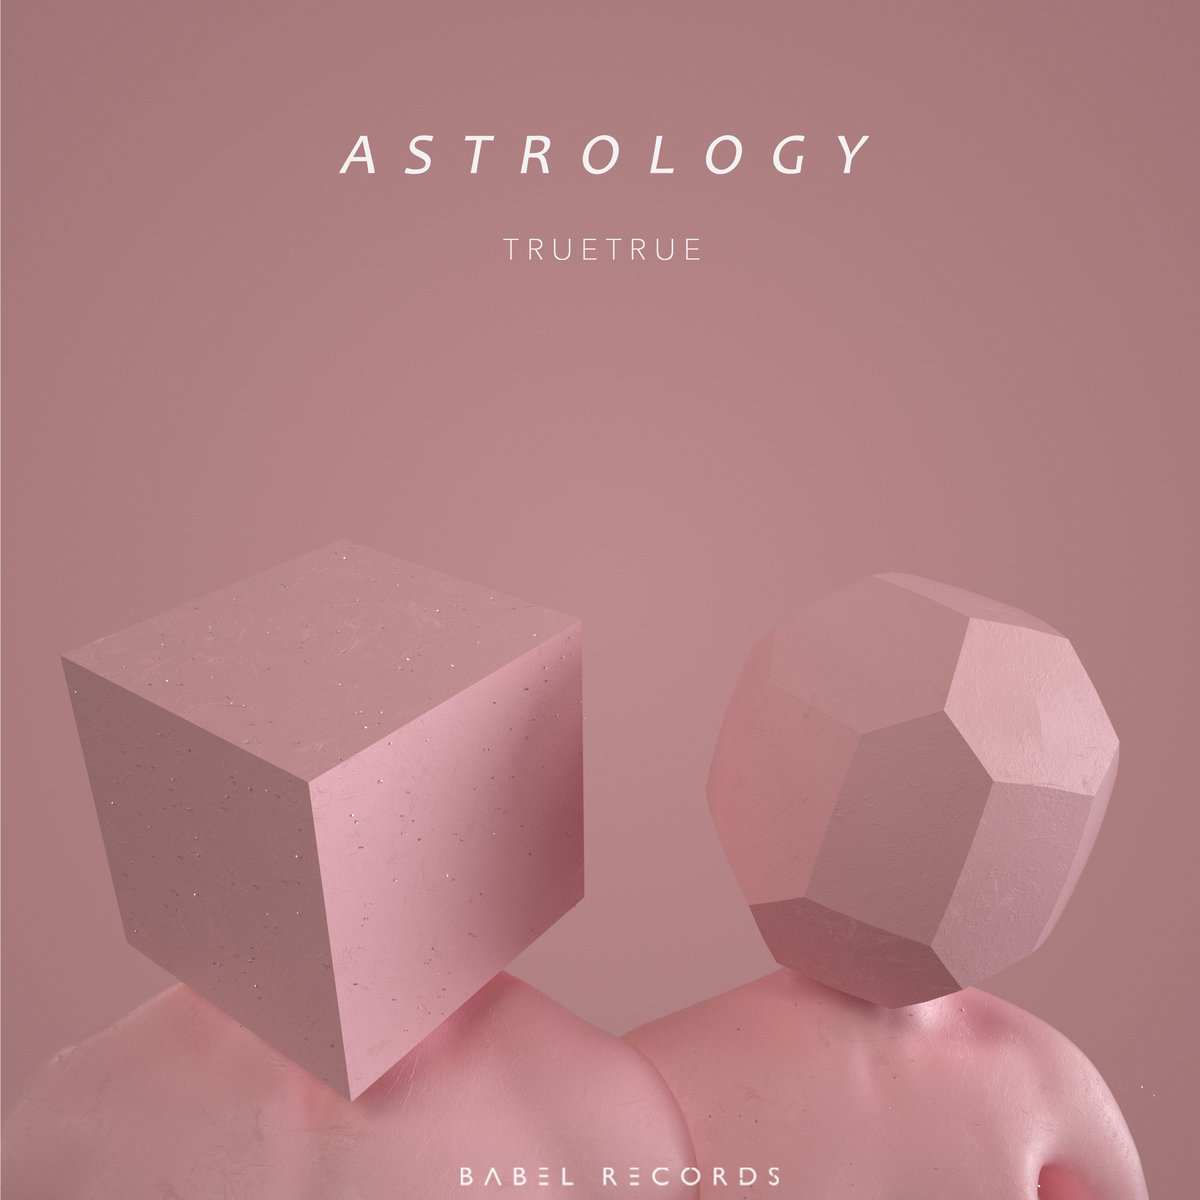 Astrology by Truetrue